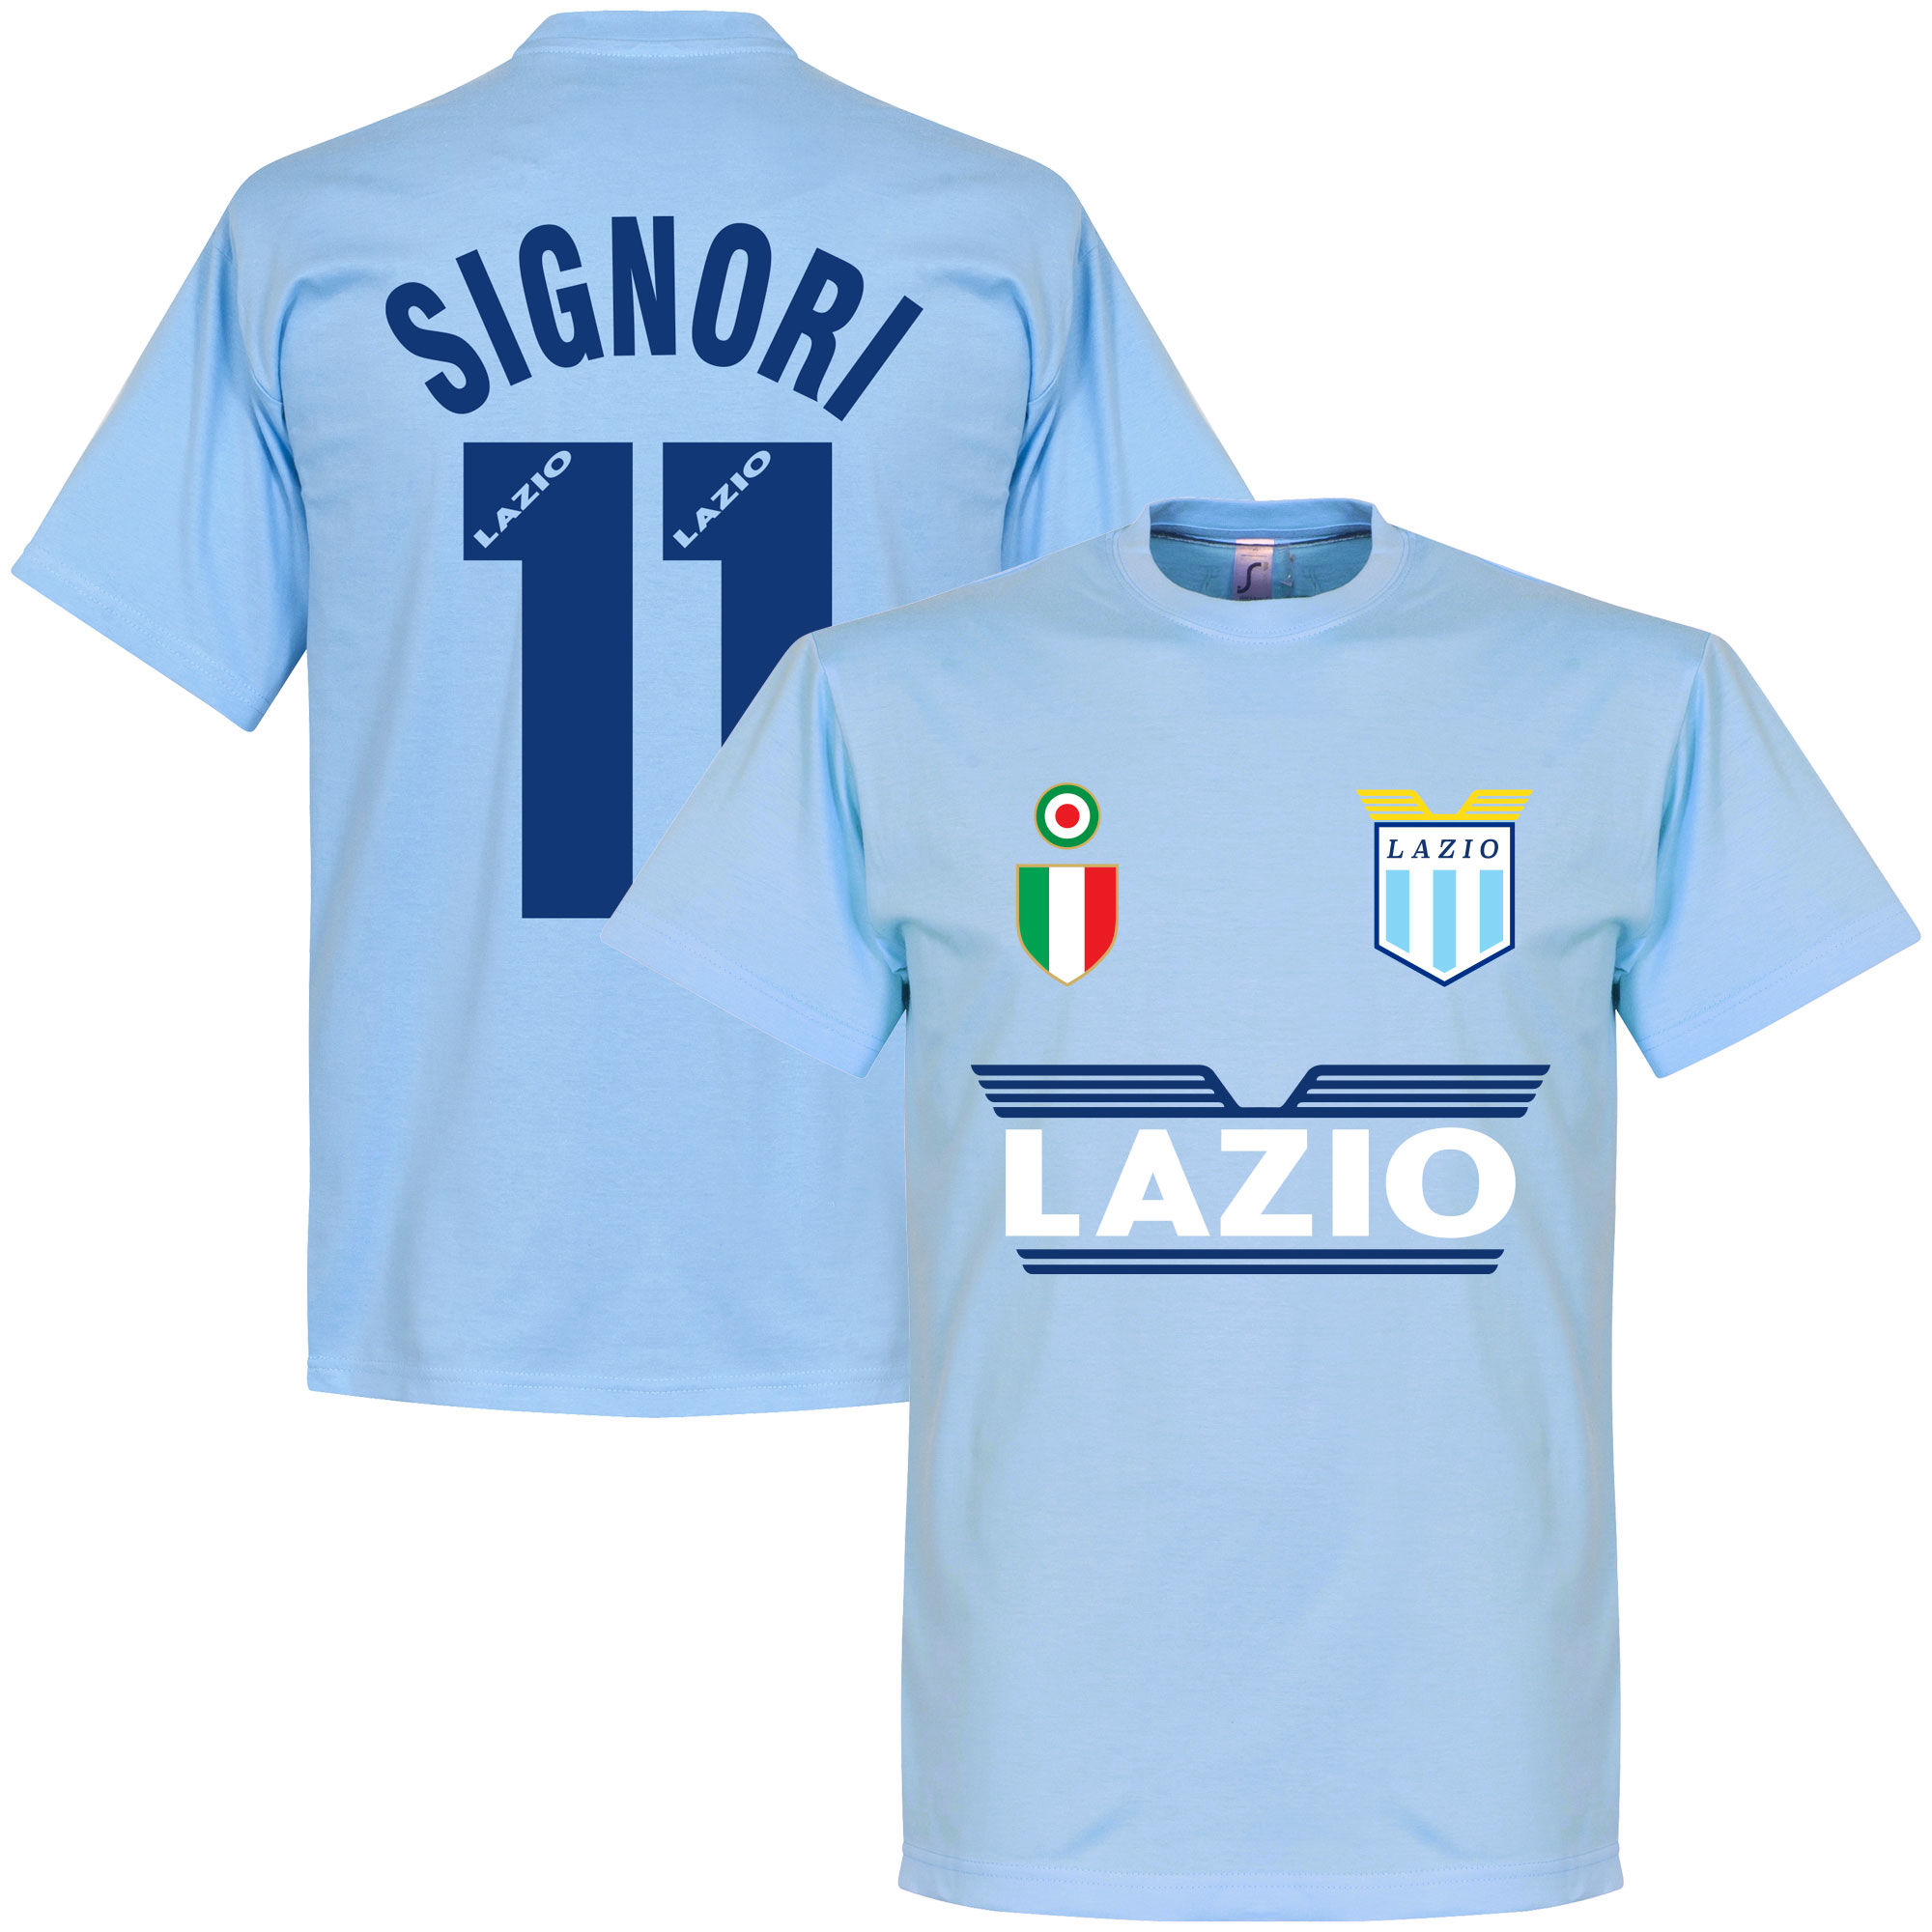 SS Lazio - Tričko - Giuseppe Signori, číslo 11, modré